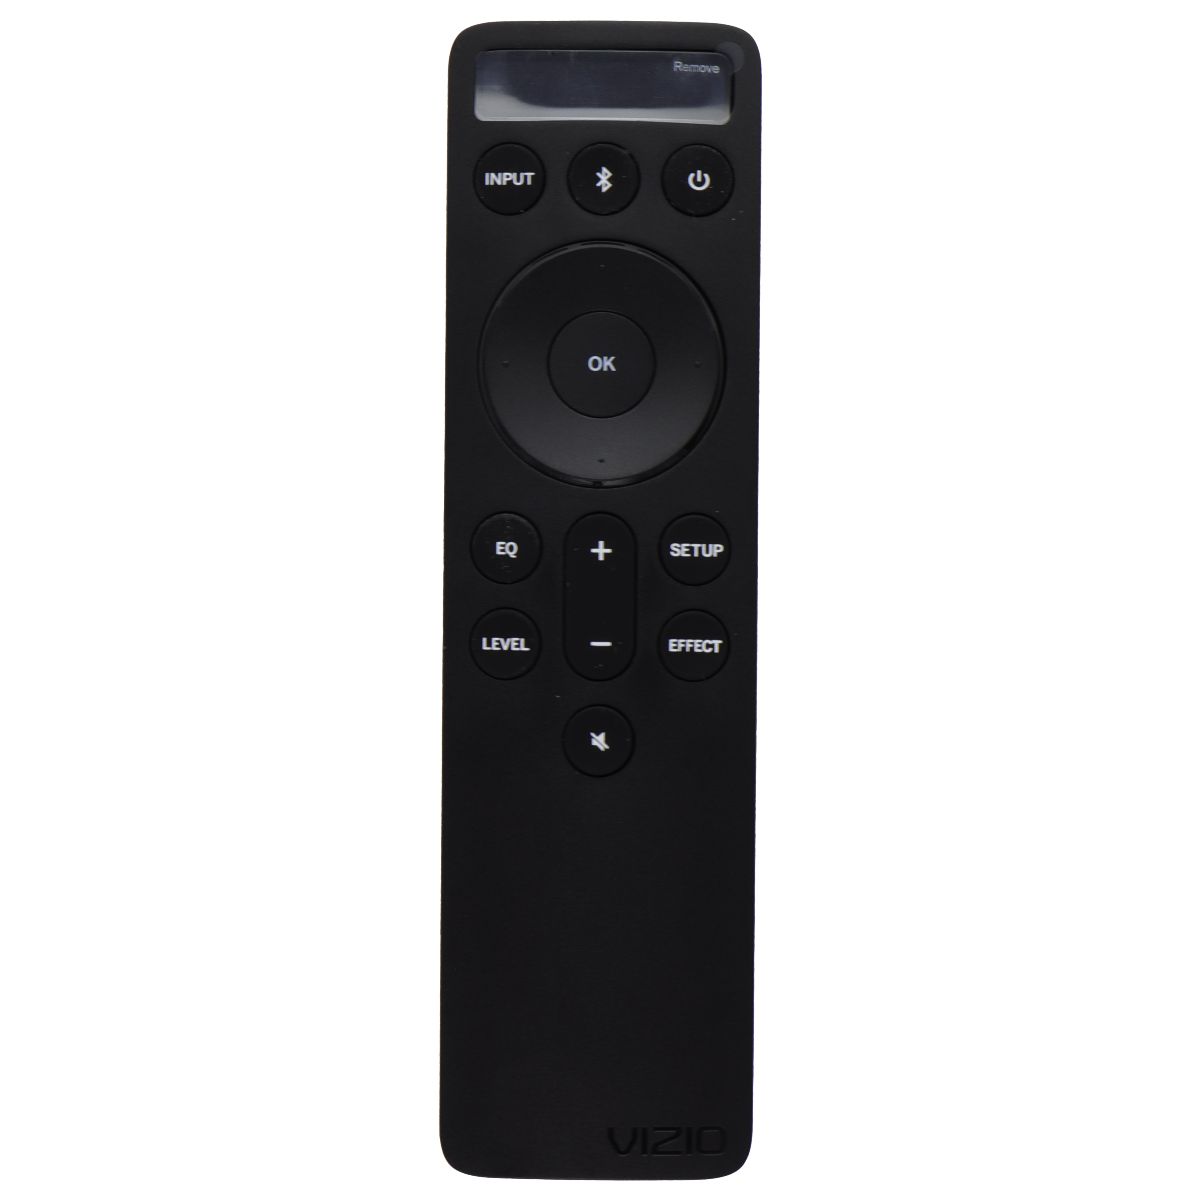 Vizio D512e-J (1023-0000270) Replacement Remote for Vizio Sound Bar - Black TV, Video & Audio Accessories - Remote Controls Vizio    - Simple Cell Bulk Wholesale Pricing - USA Seller